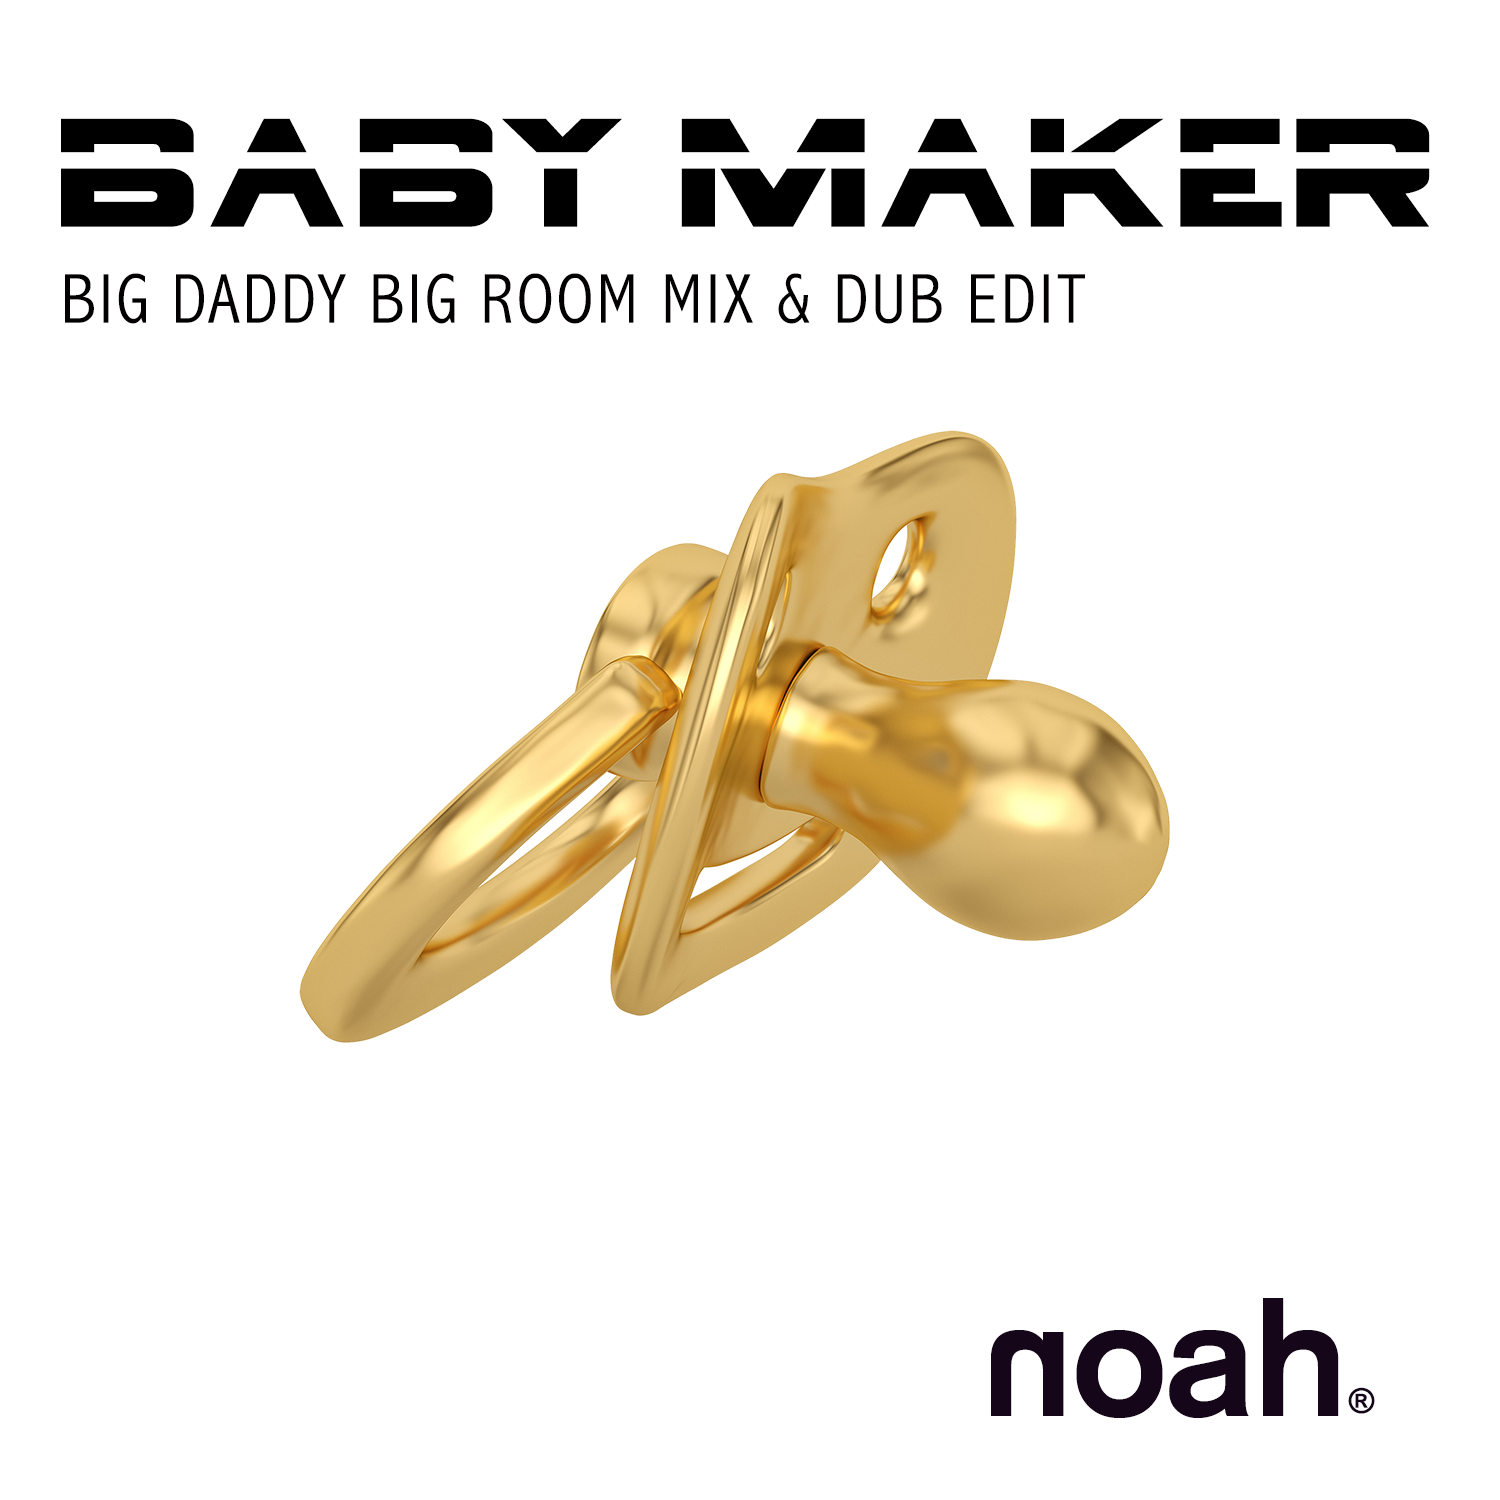 NOAH - BABYMAKER (Big Daddy Big Room Mix) 1500 x 1500.png